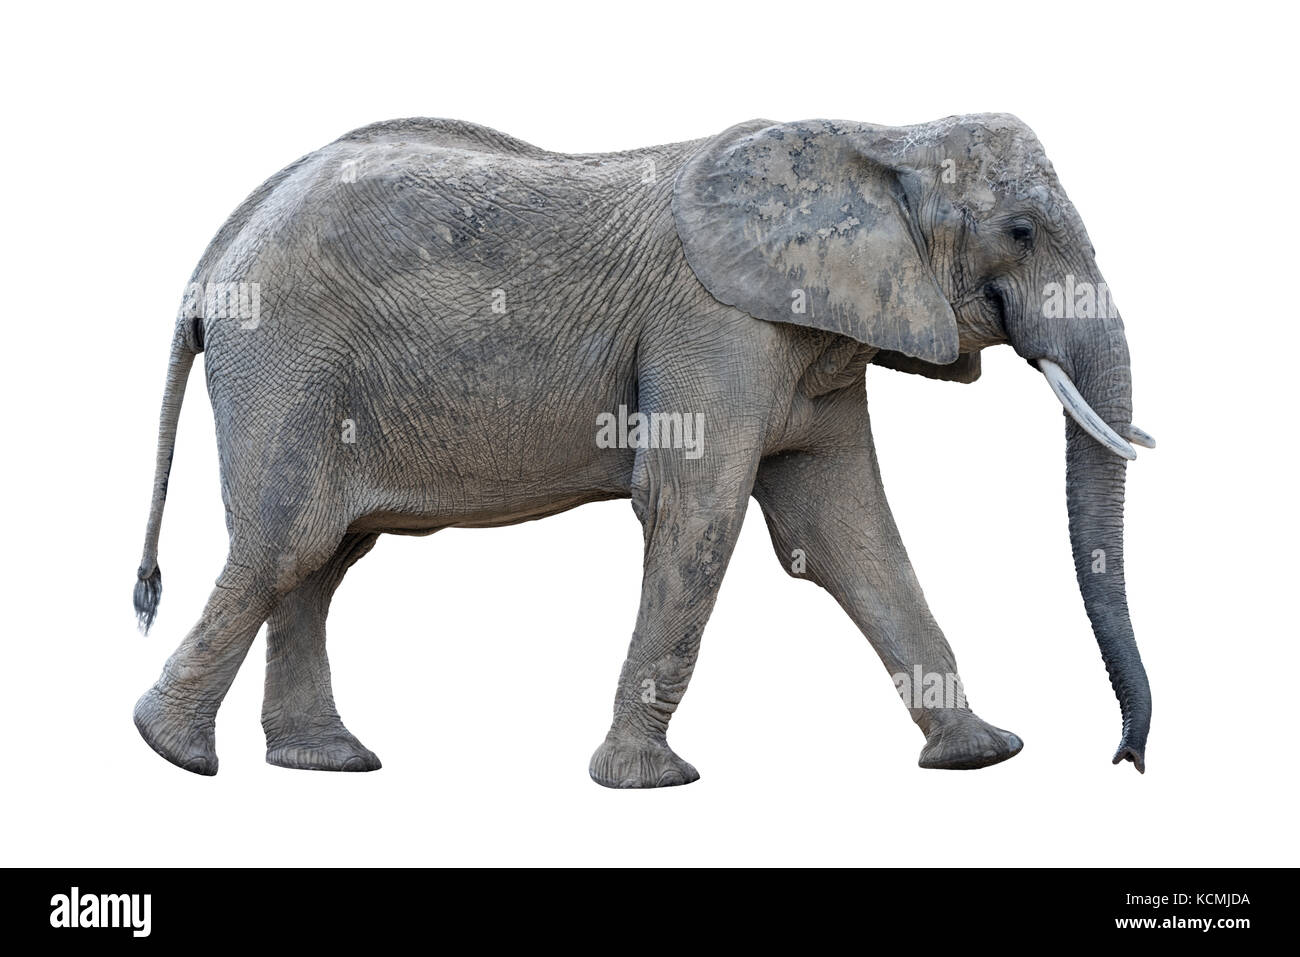 A piedi grigio elefante africano isolati su sfondo bianco Foto Stock